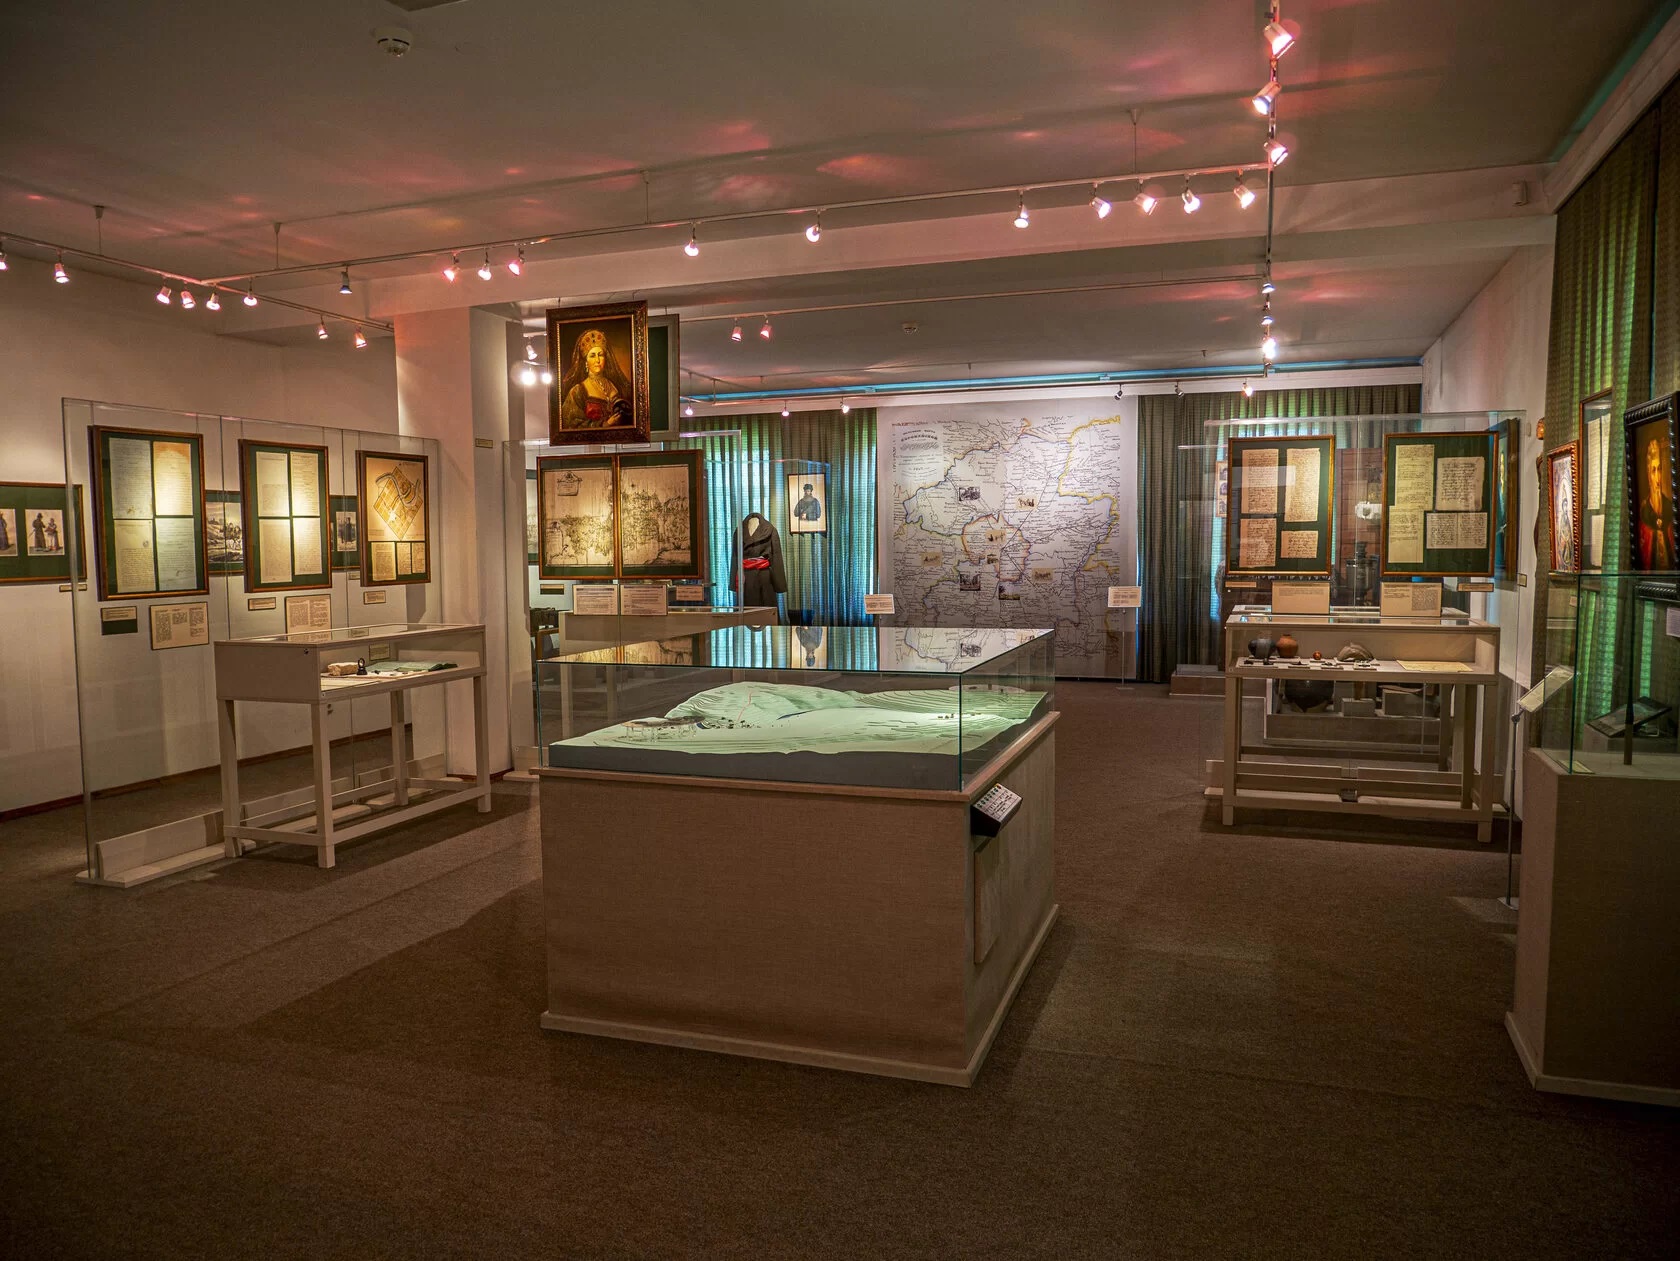 Музей показывает исторические эпохи от первых поселений до рождения и развития градостроительной структуры города